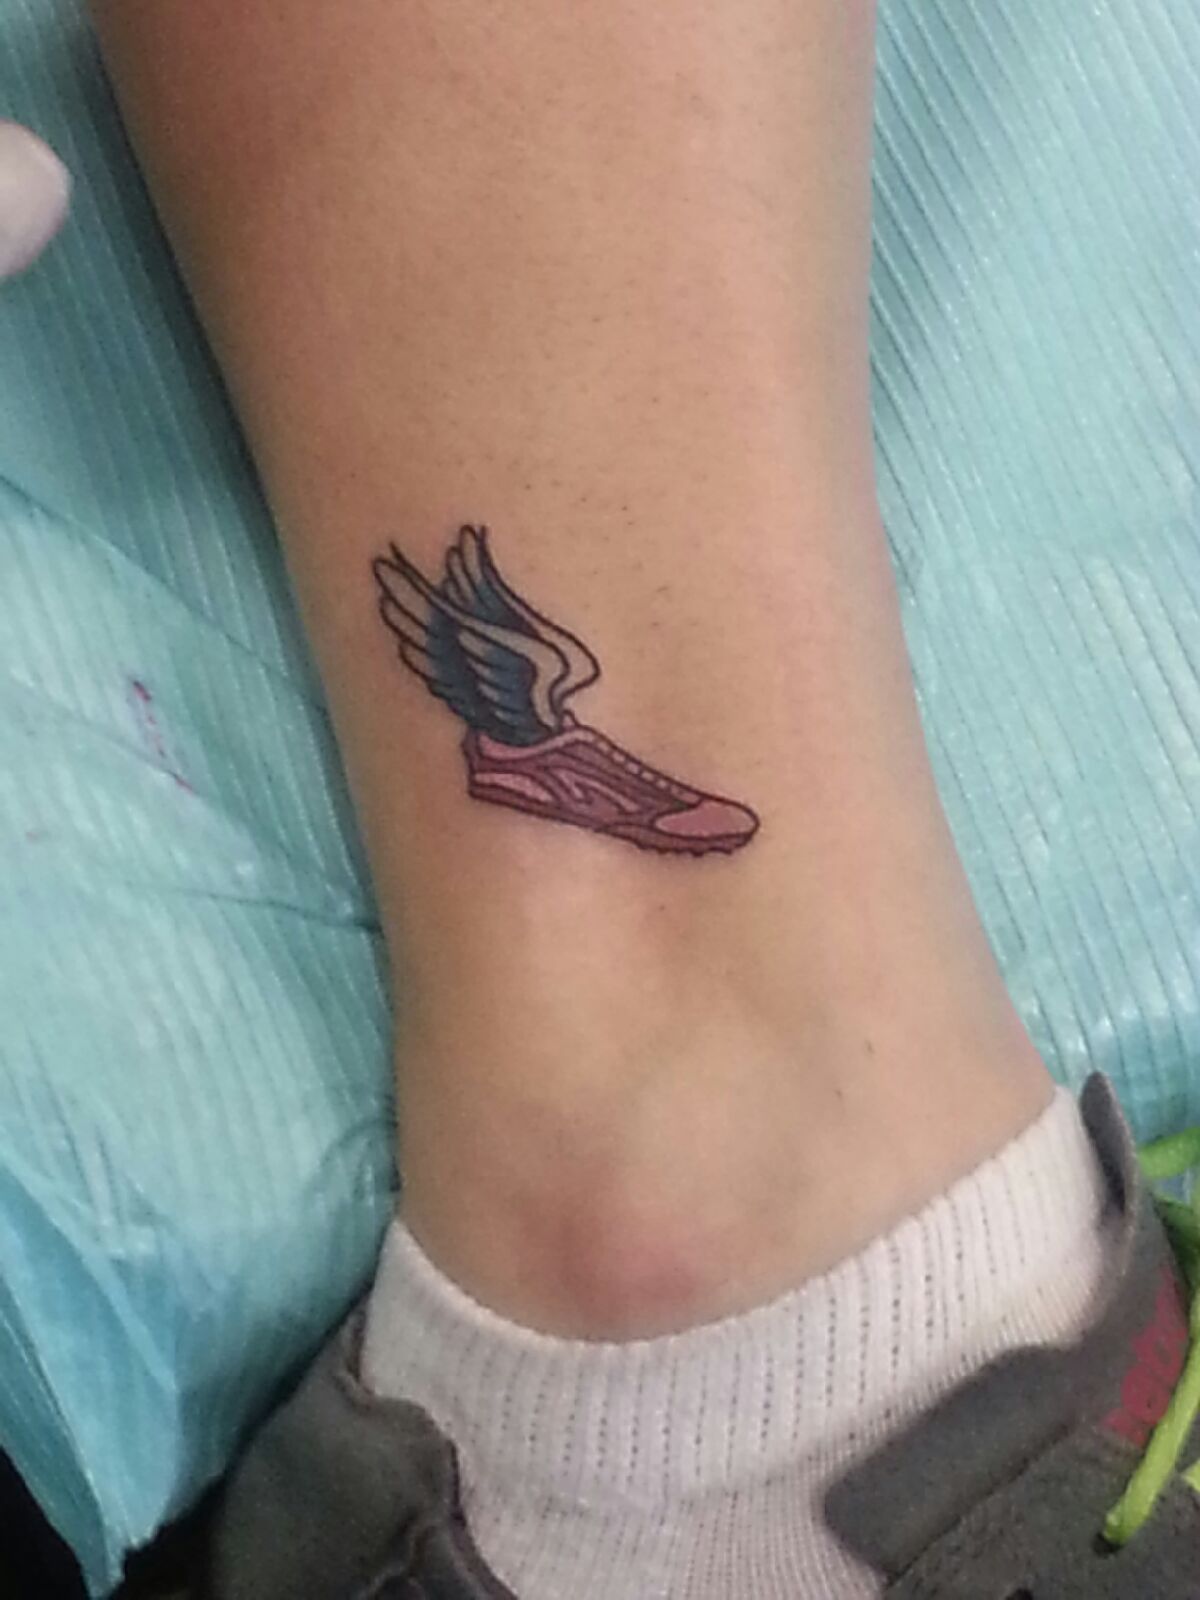 My running shoe tattoo | Tattoo | Pinterest | Shoe tattoos, Tattoo ...